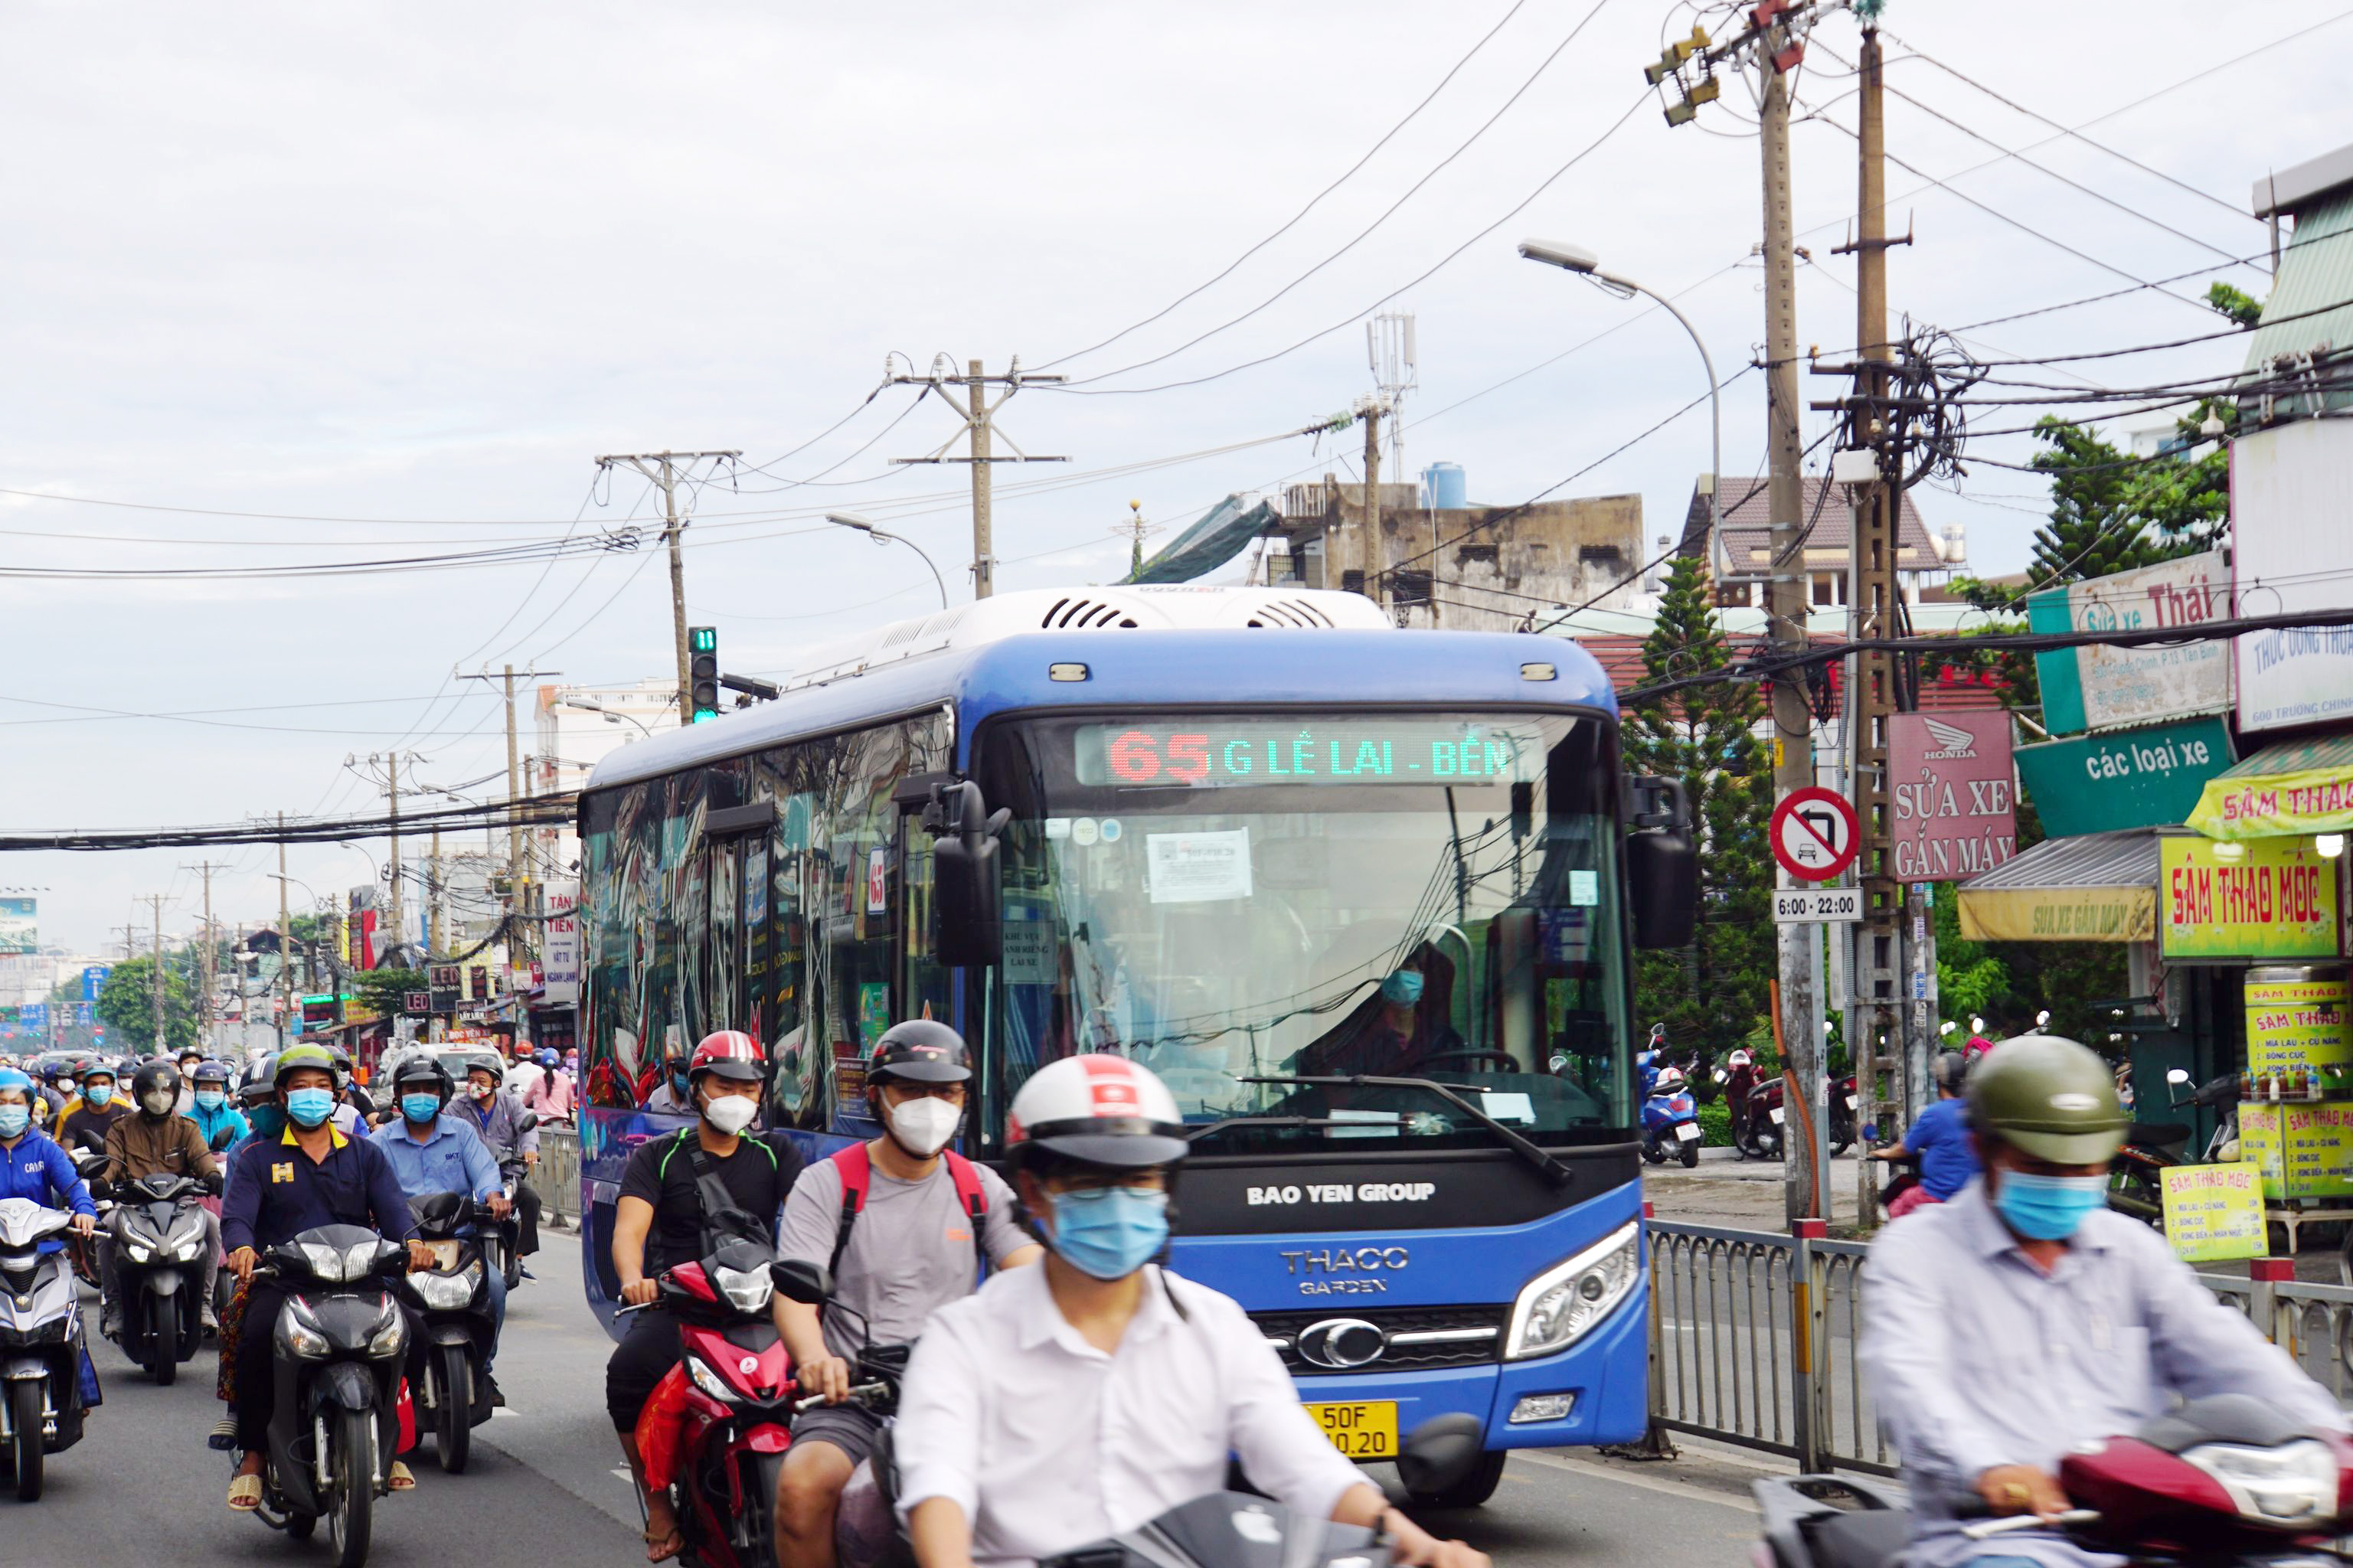 Sáng nay, ông Lê Hoàn - Phó giám đốc Trung tâm quản lý Giao thông công cộng TP.HCM (Trung tâm xe buýt) cho biết, 8 tuyến xe buýt chạy trên trục đường chính, lộ trình qua các bến xe, bệnh viện... đã hoạt động trở lại để phục vụ người dân sau thời gian tạm ngưng do dịch.